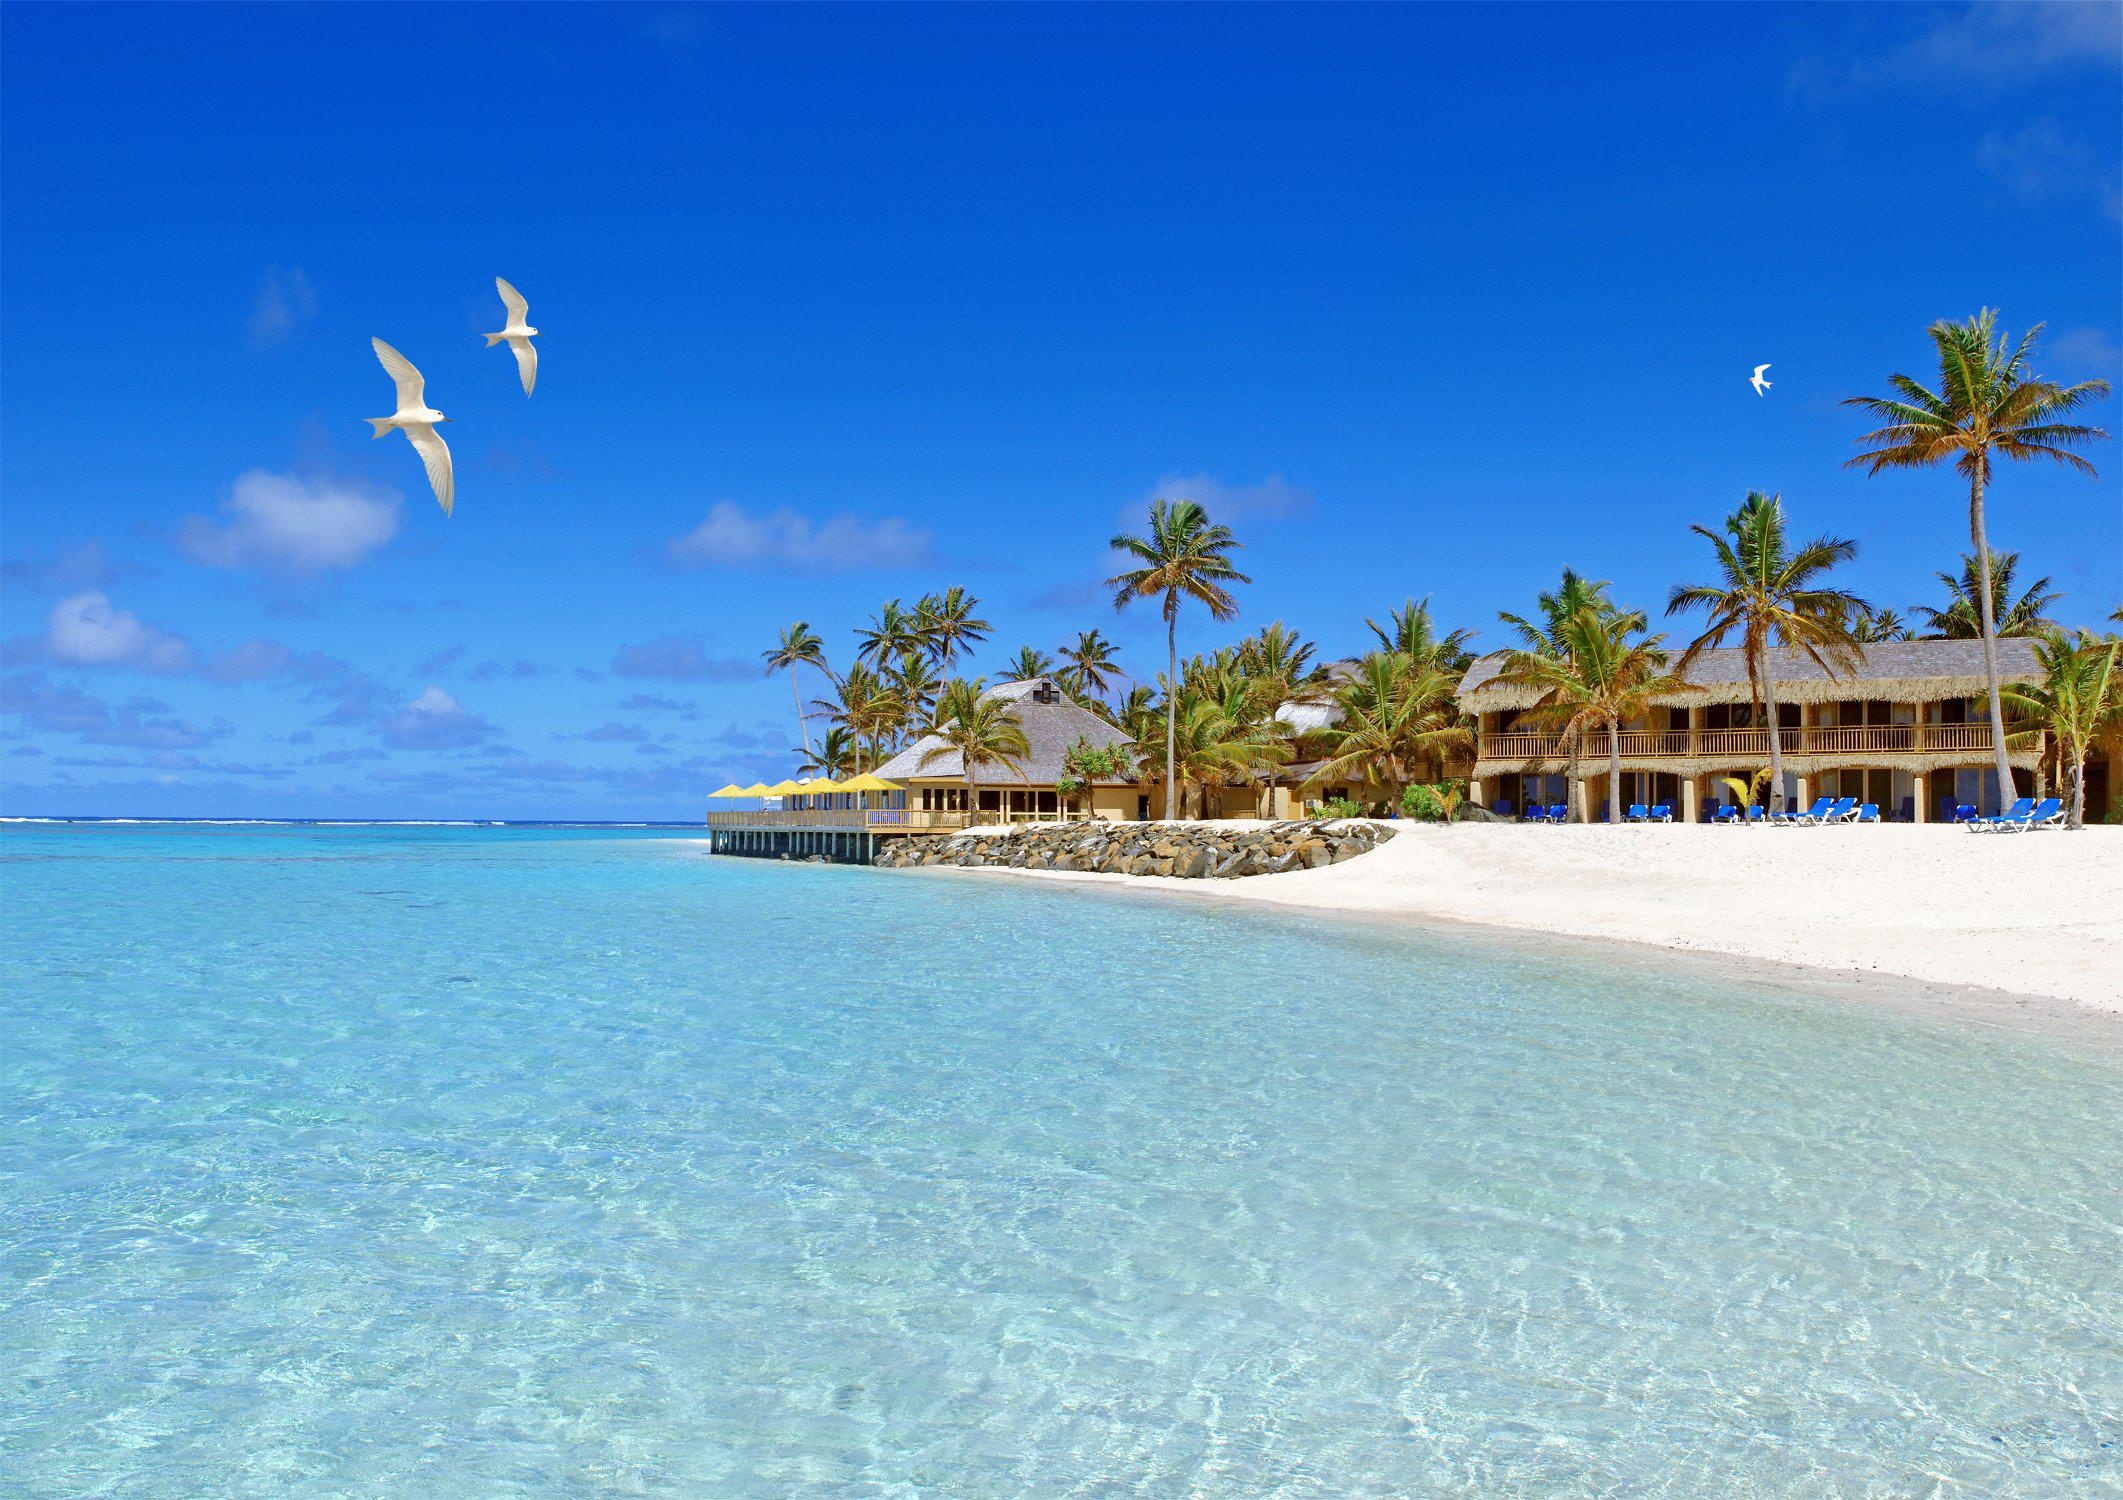 Avarua beach birds, Sky and sea, Sand bungalows, Tropical paradise, 2130x1500 HD Desktop